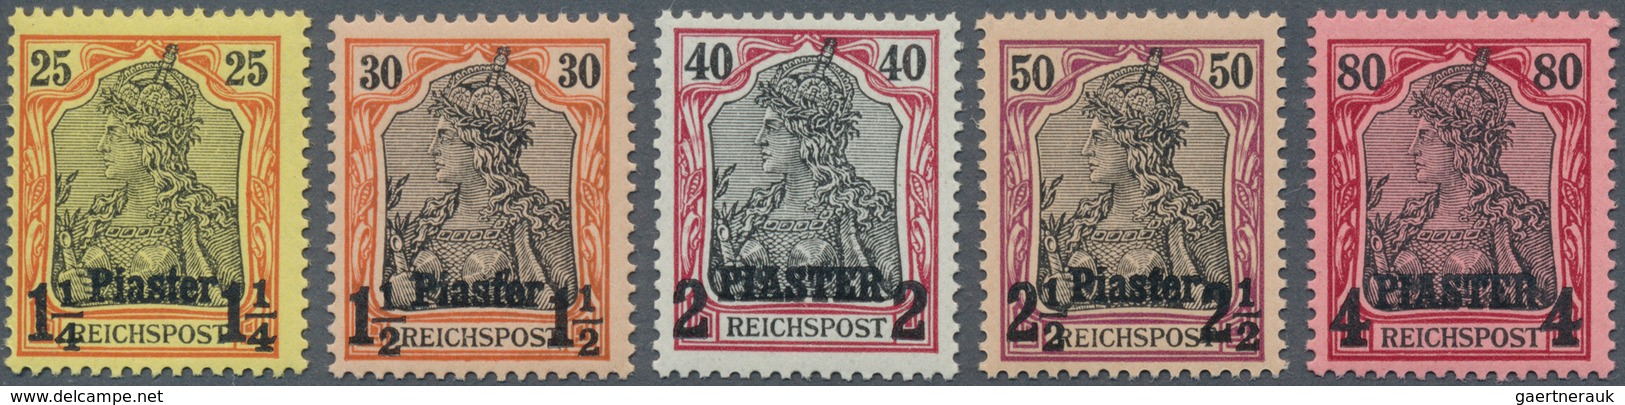 Deutsche Post In Der Türkei: 1902, Germania Aufdruck-Serie 5 Werte In Abweichender Schrifttype Tadel - Turquie (bureaux)